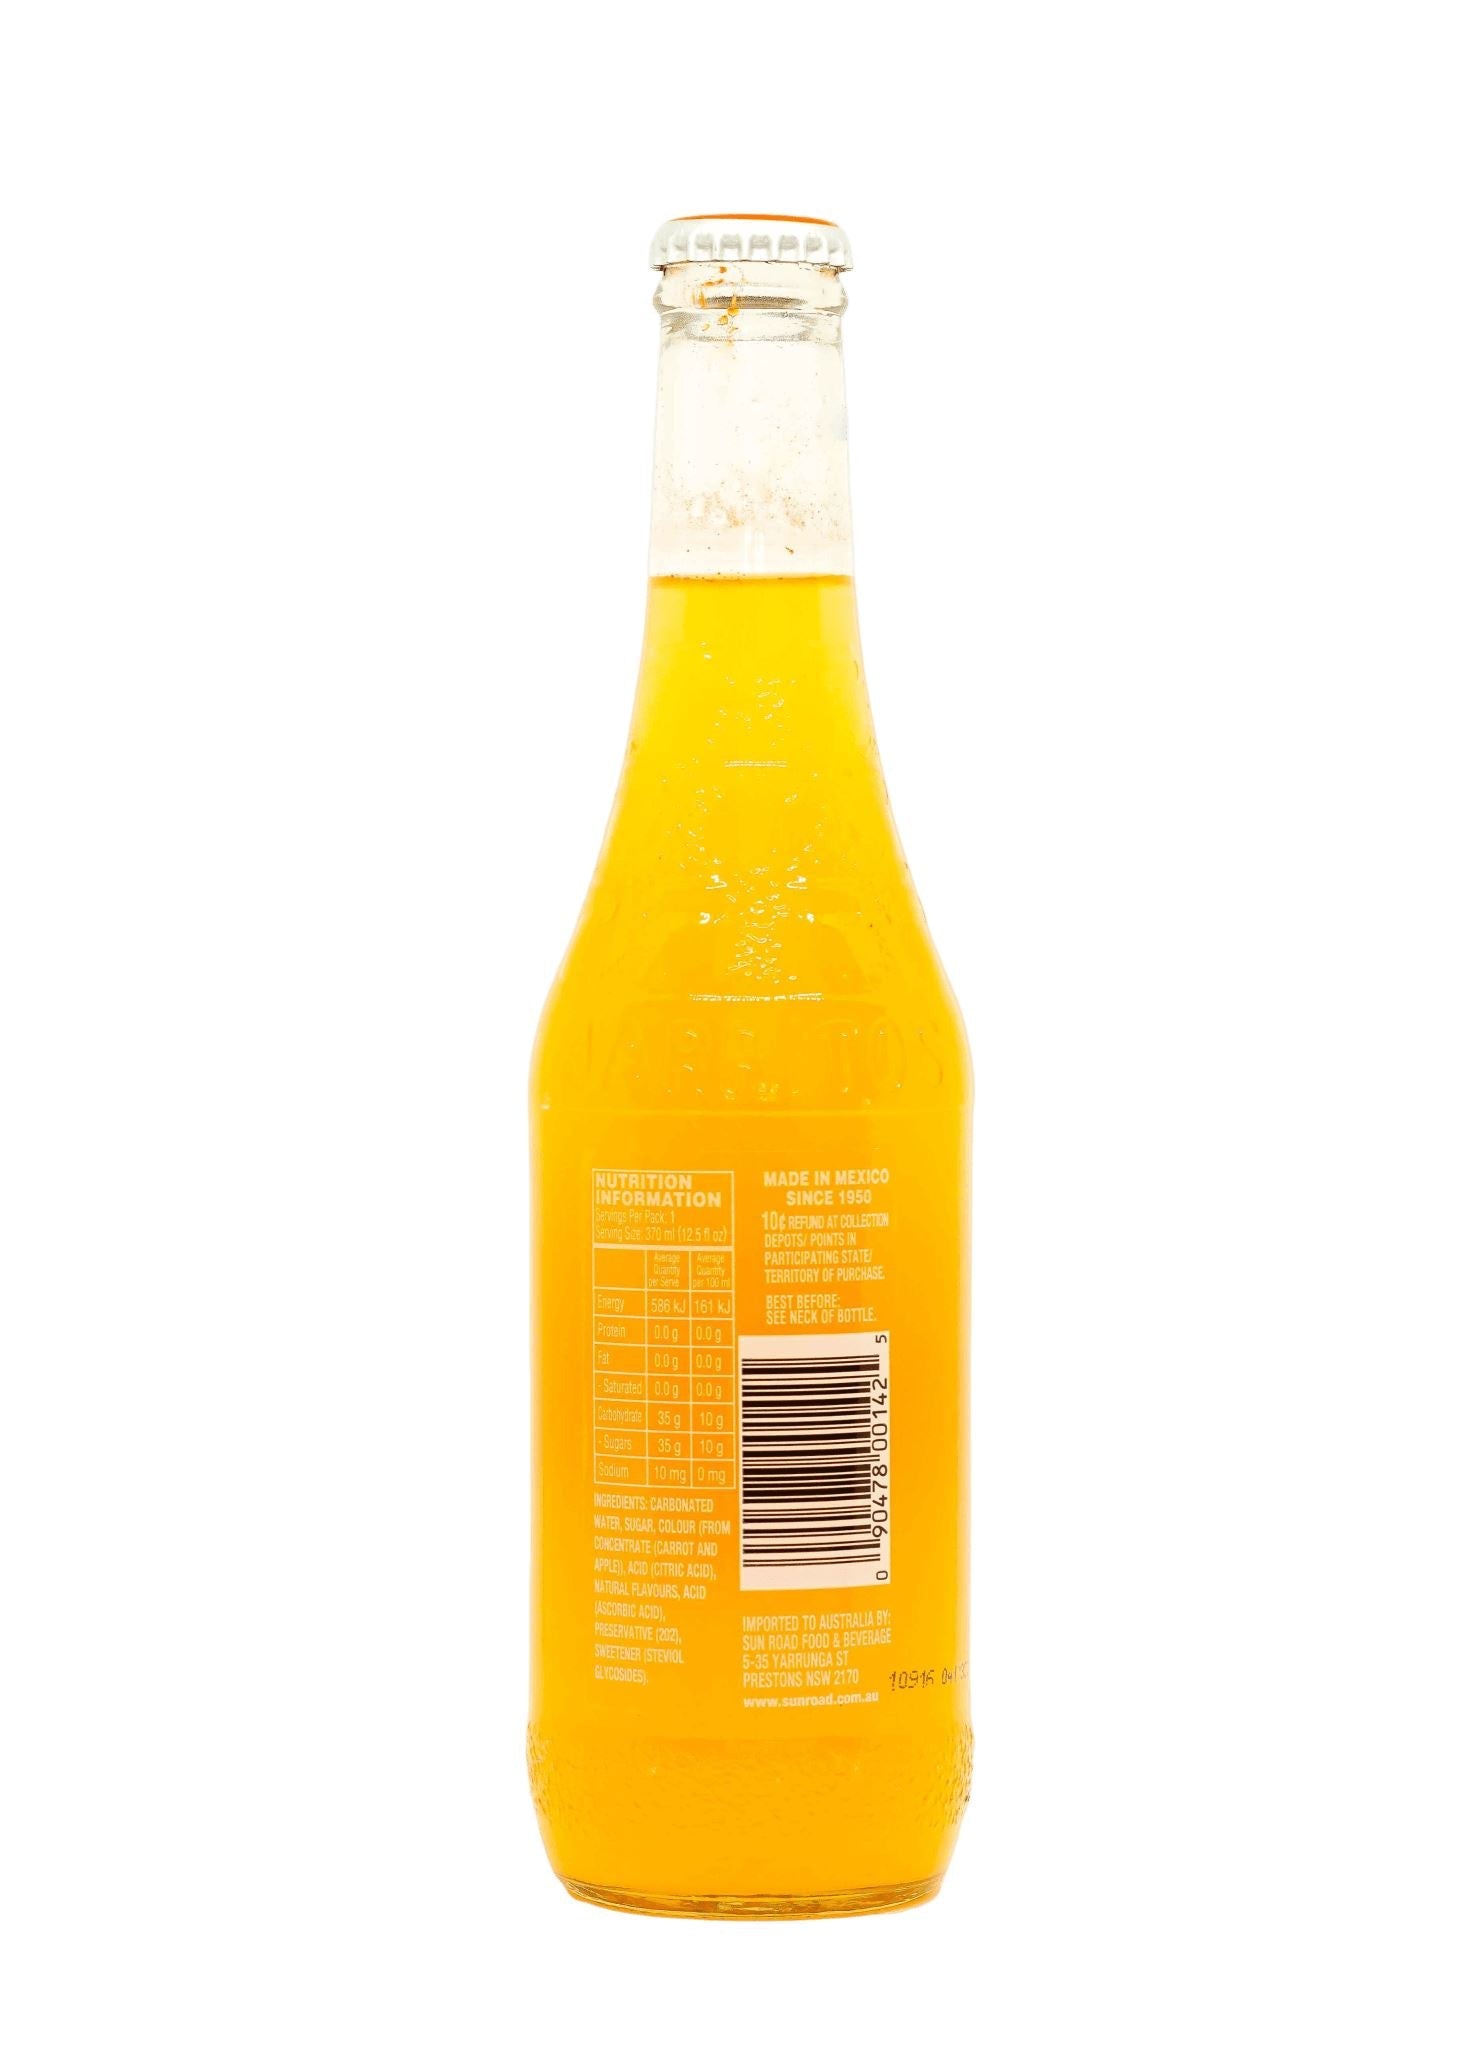 Jarritos Mango Soda 370ml Beverages Jarritos 